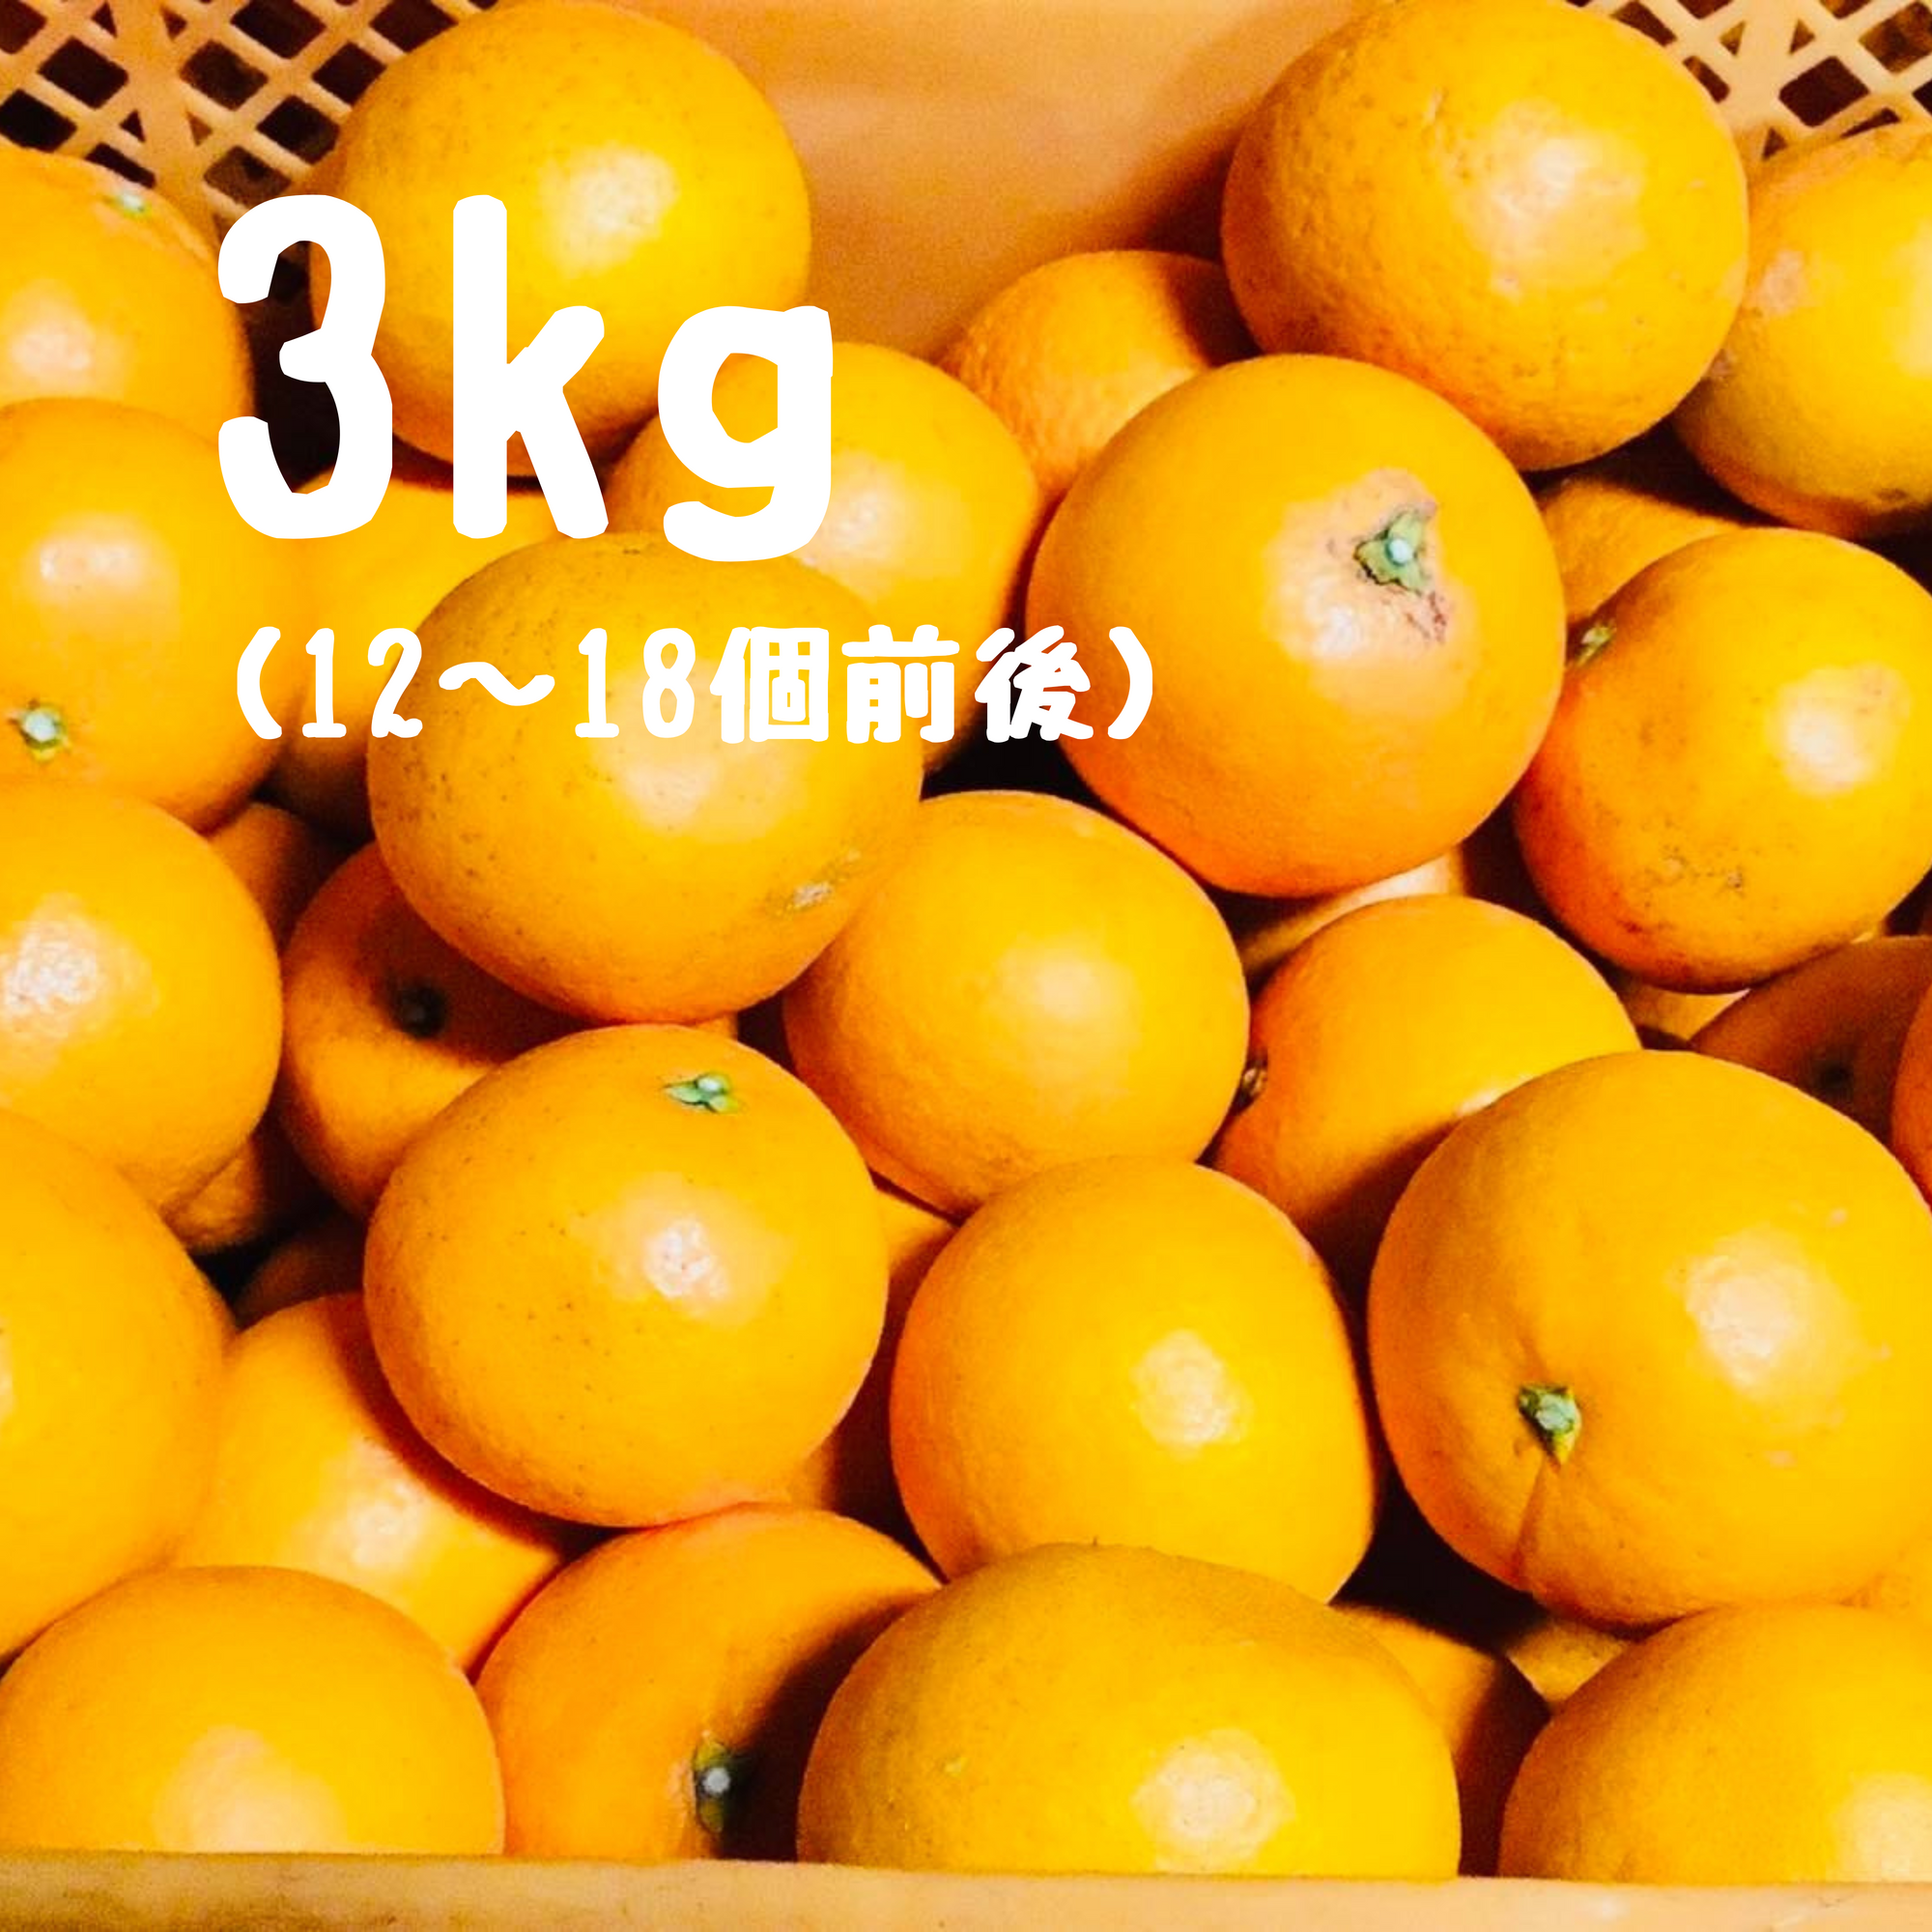 清見オレンジ 3キロ